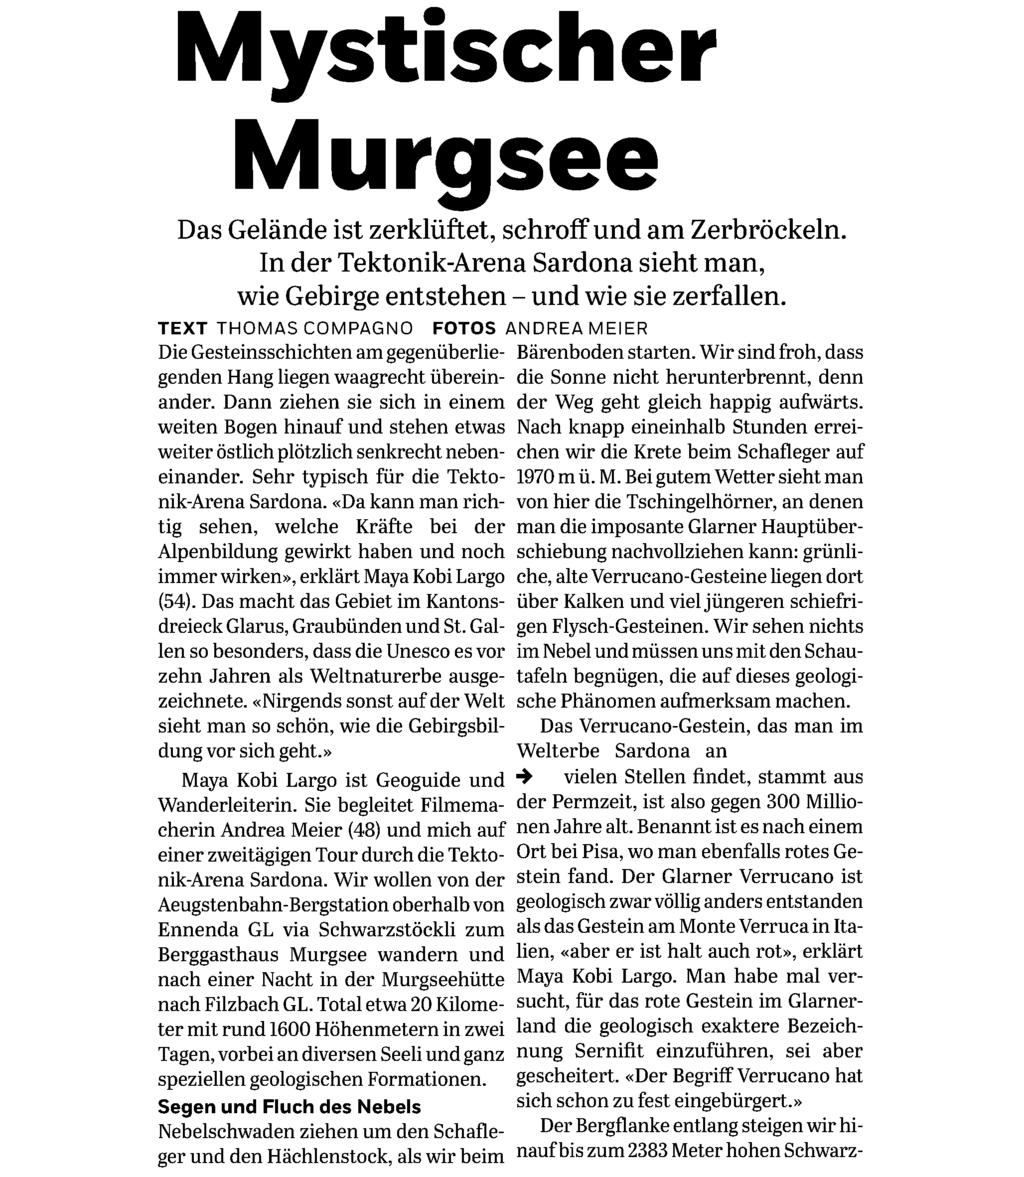 Coopzeitung Ausschnitt Seite: 2/5 Mystischer Murgsee Das Gelände ist zerklüftet, schroff und am Zerbröckeln. In der Tektonik-Arena Sardona sieht man, wie Gebirge entstehen - und wie sie zerfallen.